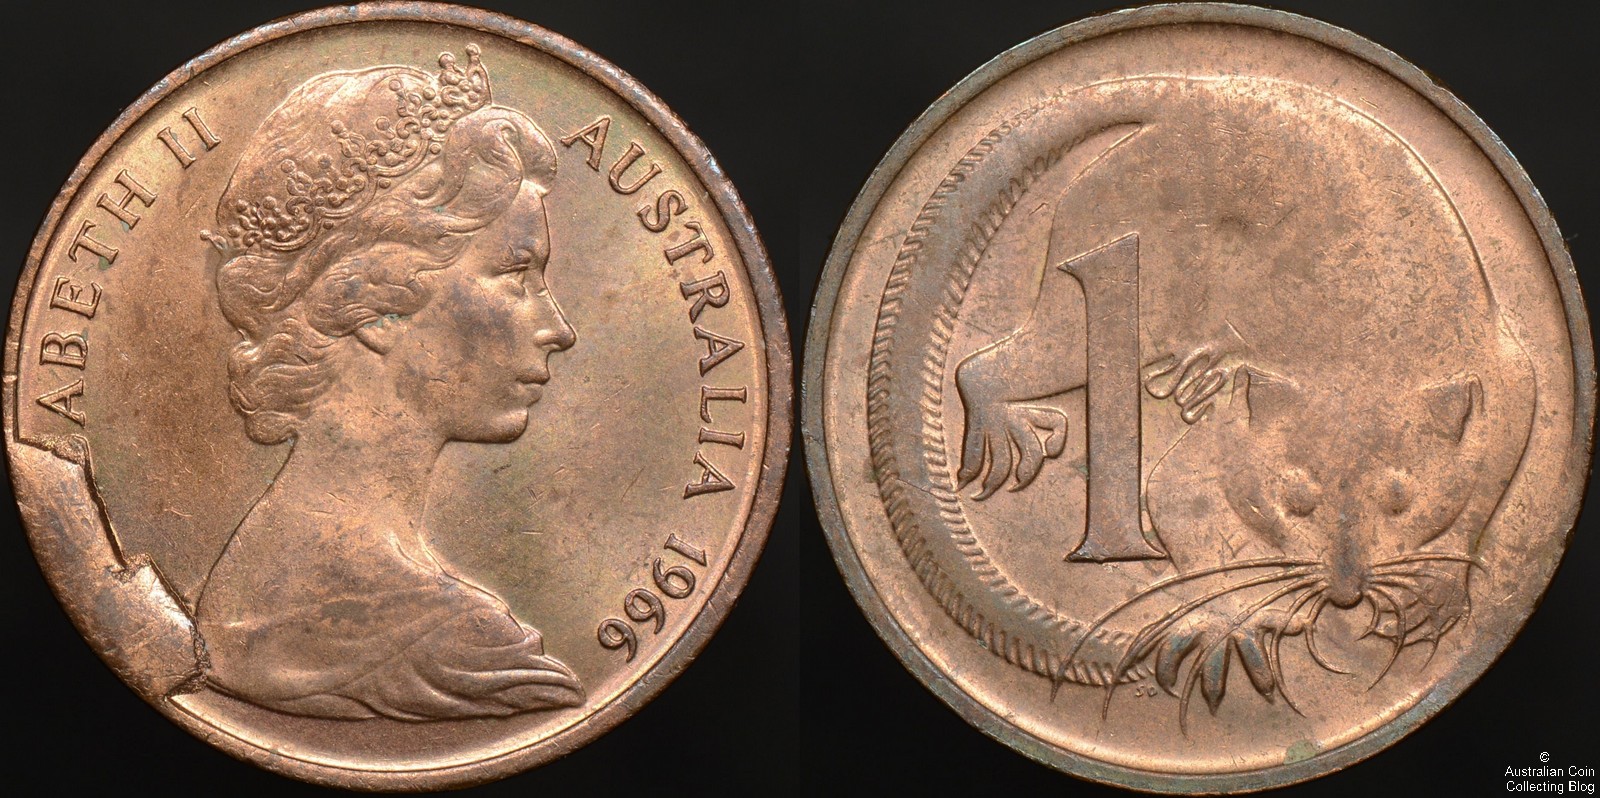 1966 1 cent obverse cud